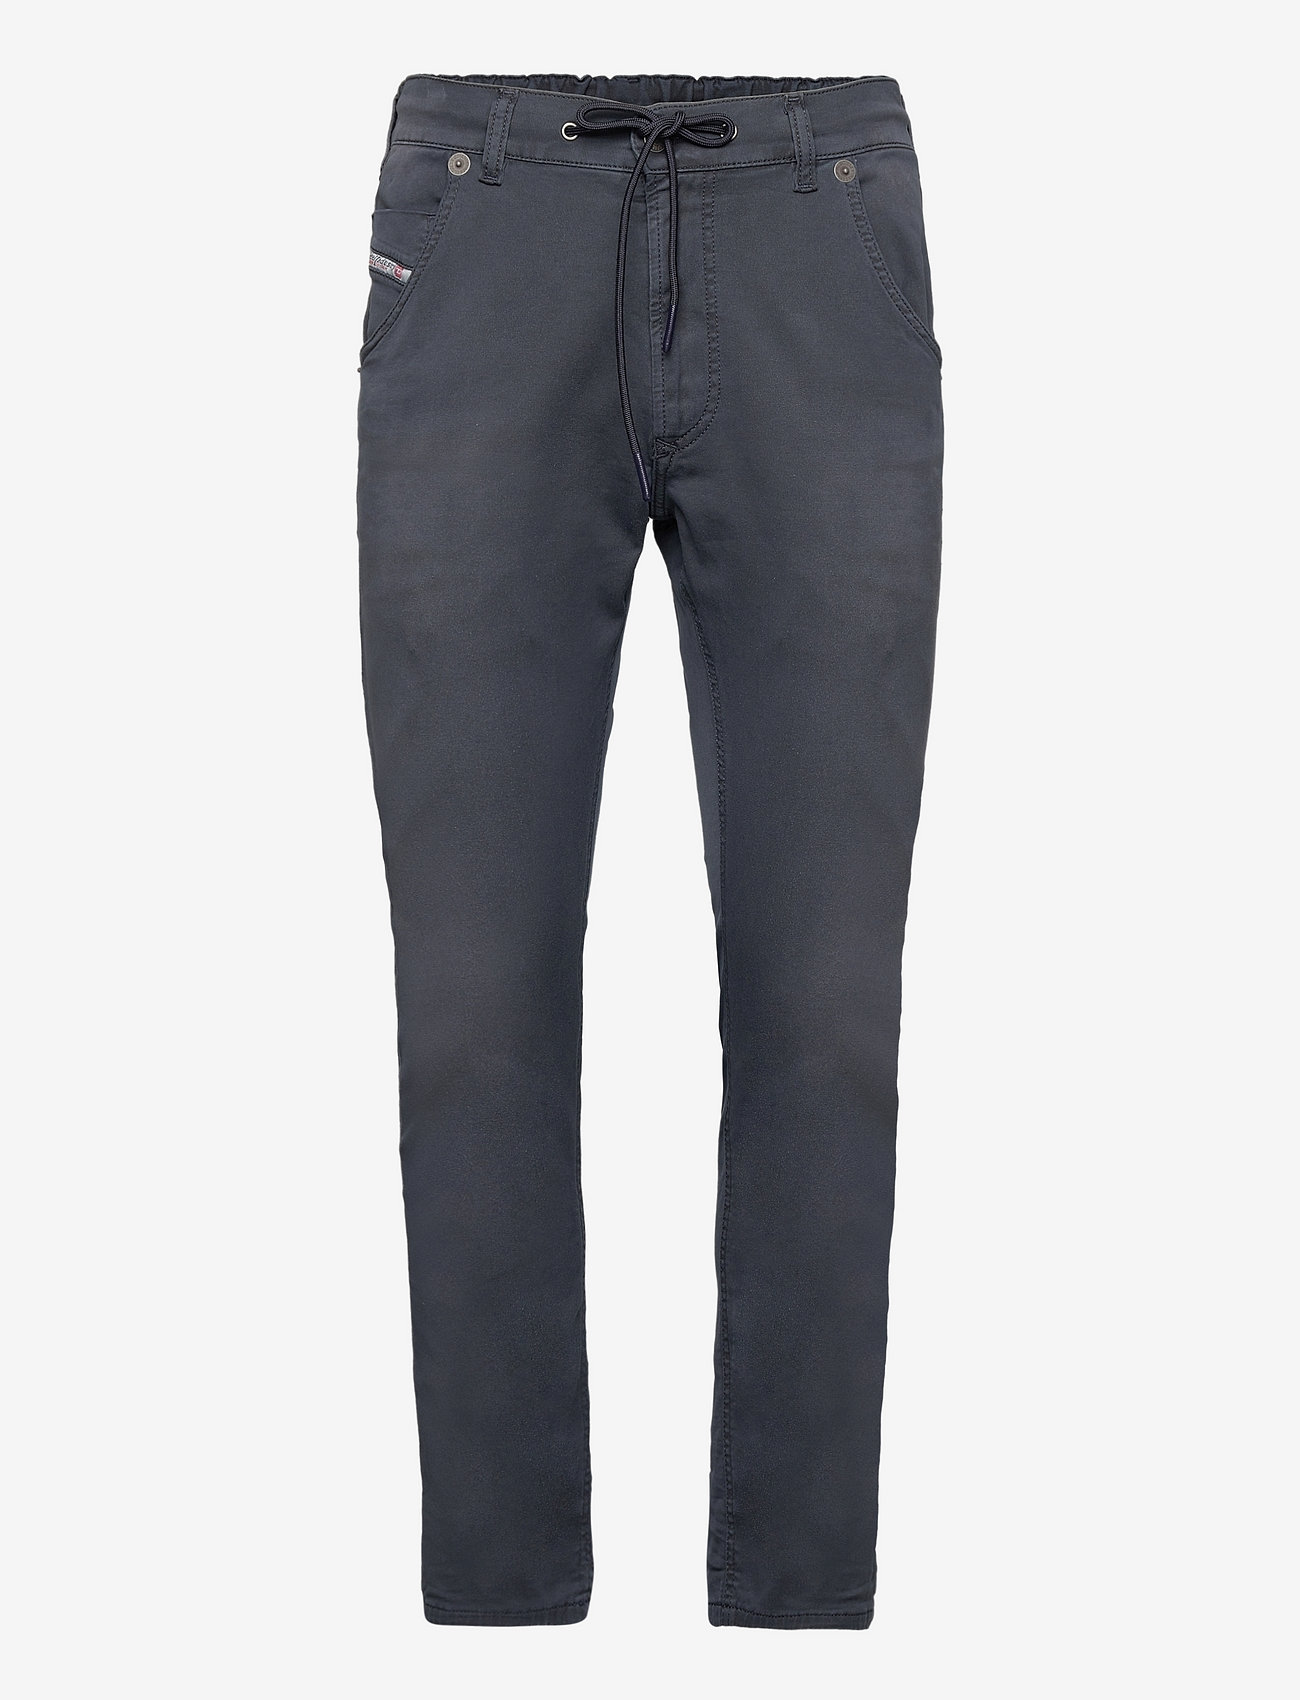 Diesel - KROOLEY-E-NE Sweat jeans - slim fit -farkut - dark/blue - 0